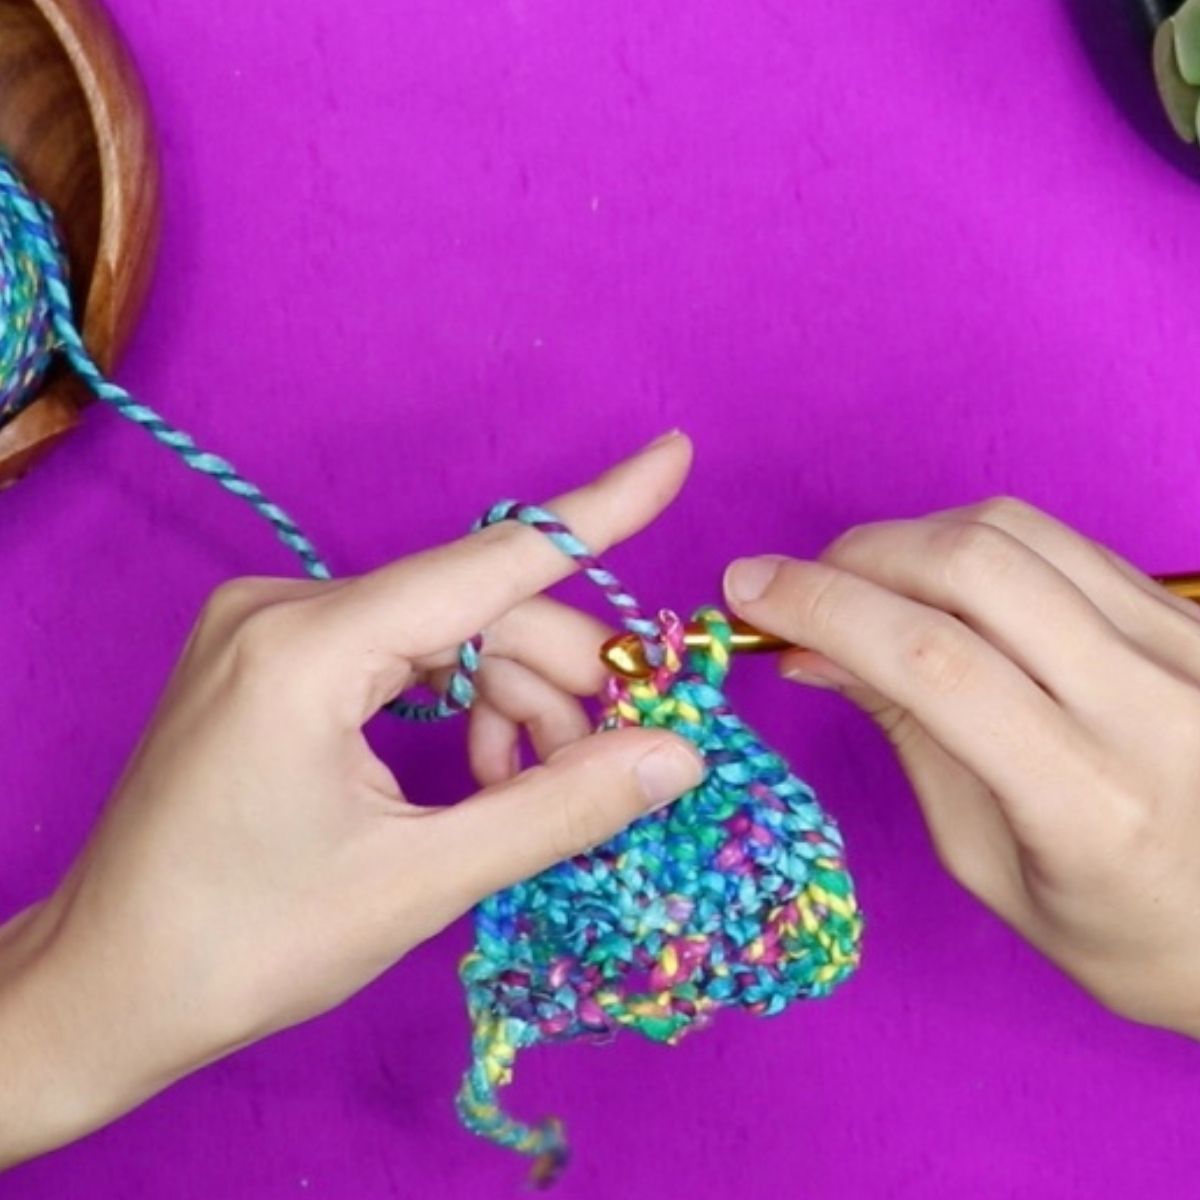 Blanket Crochet Kit. Beginners Crochet Kit. Learn to Crochet. Easy